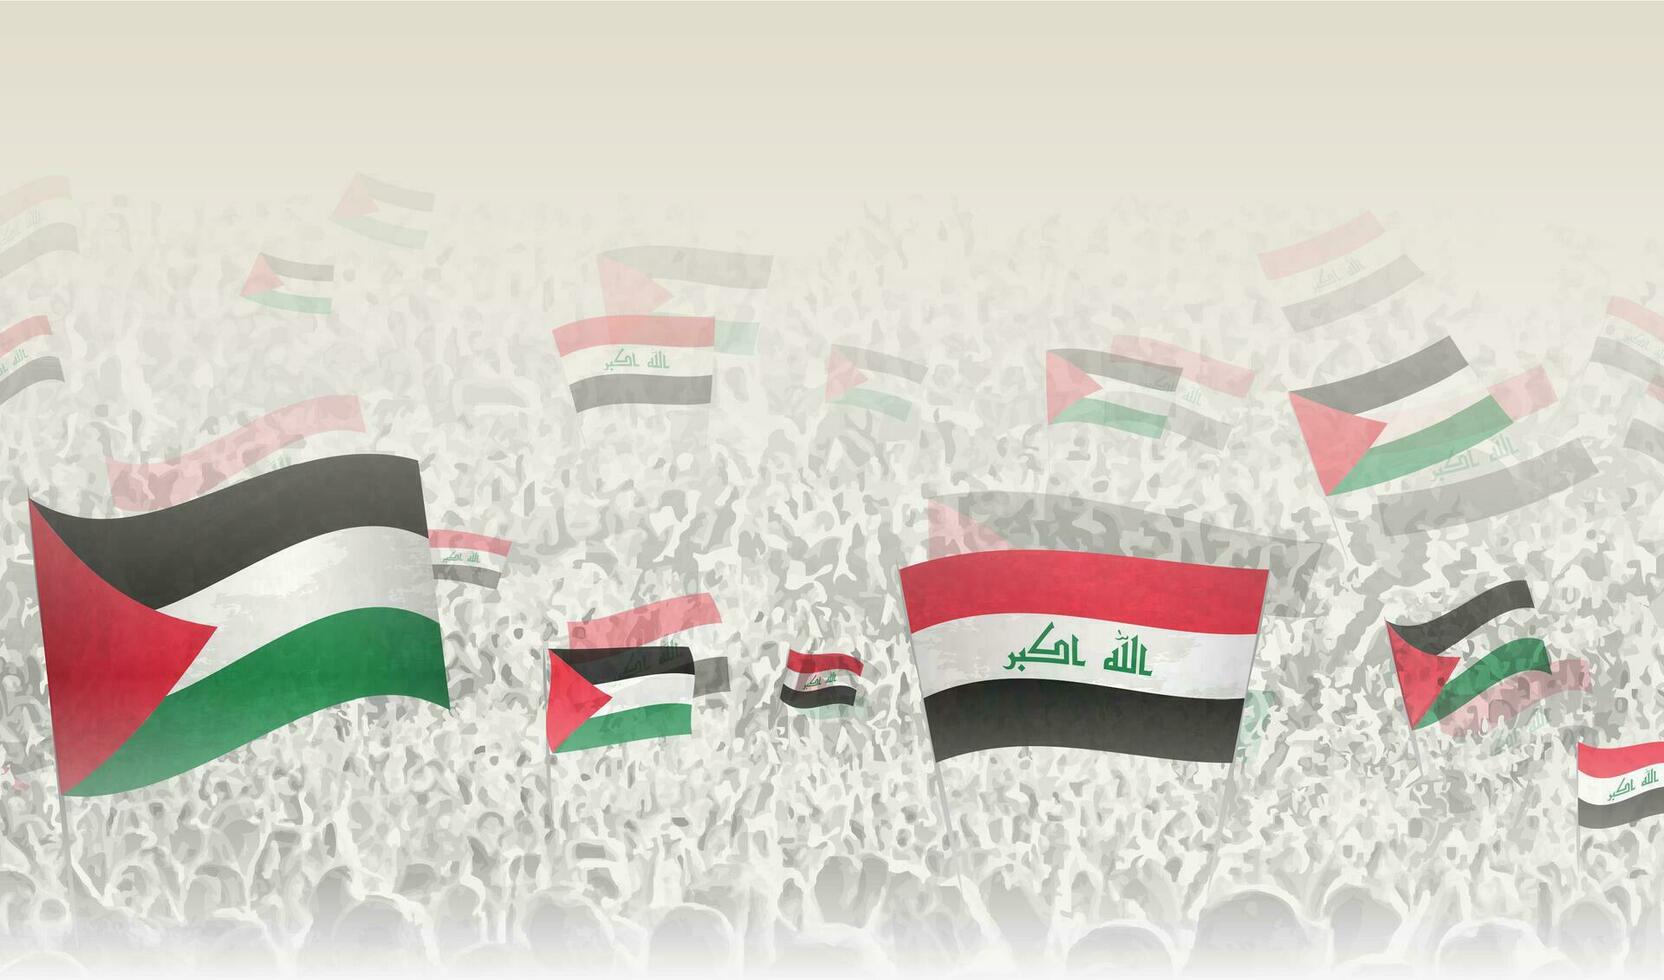 palestina och irak flaggor i en folkmassan av glädjande människor. vektor